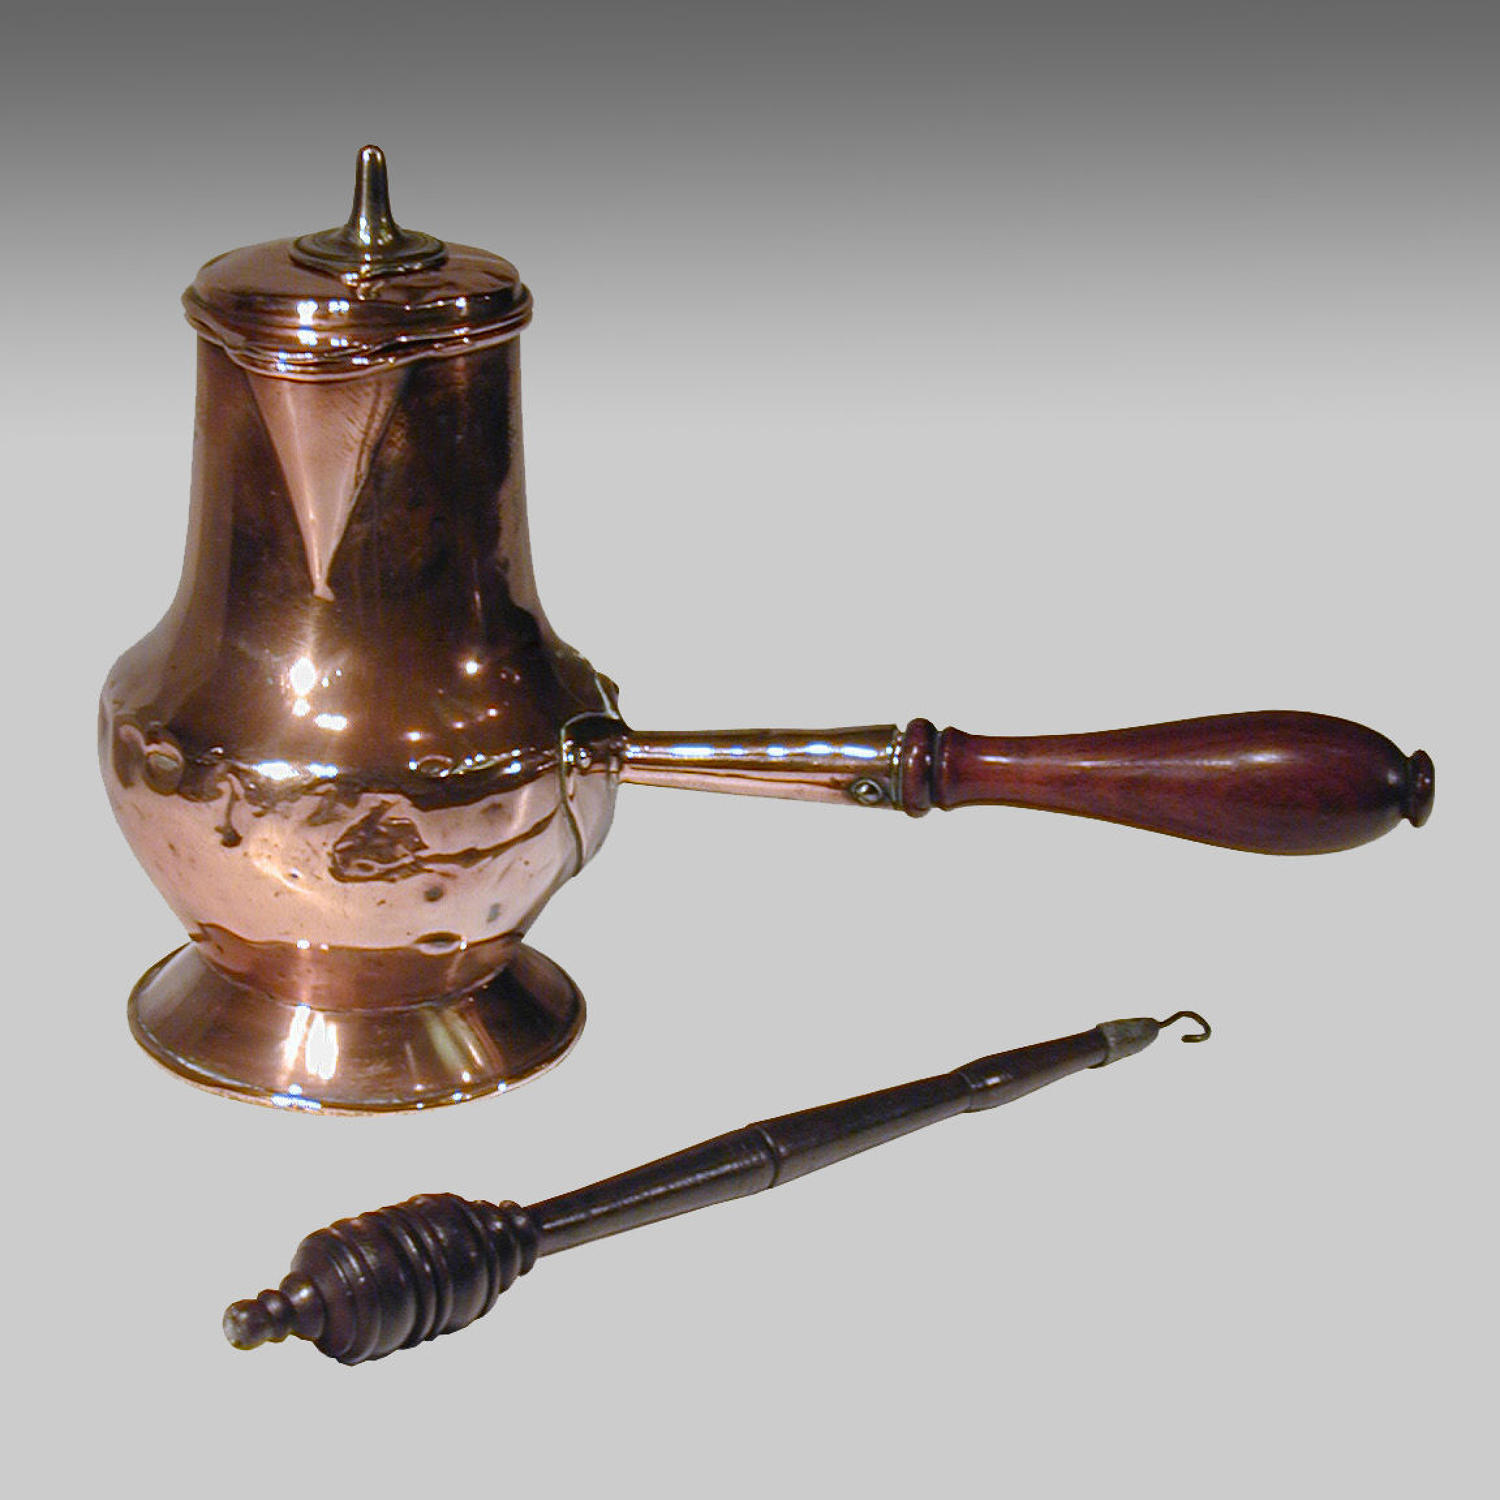 Rare antique 18th century copper chocolate pot